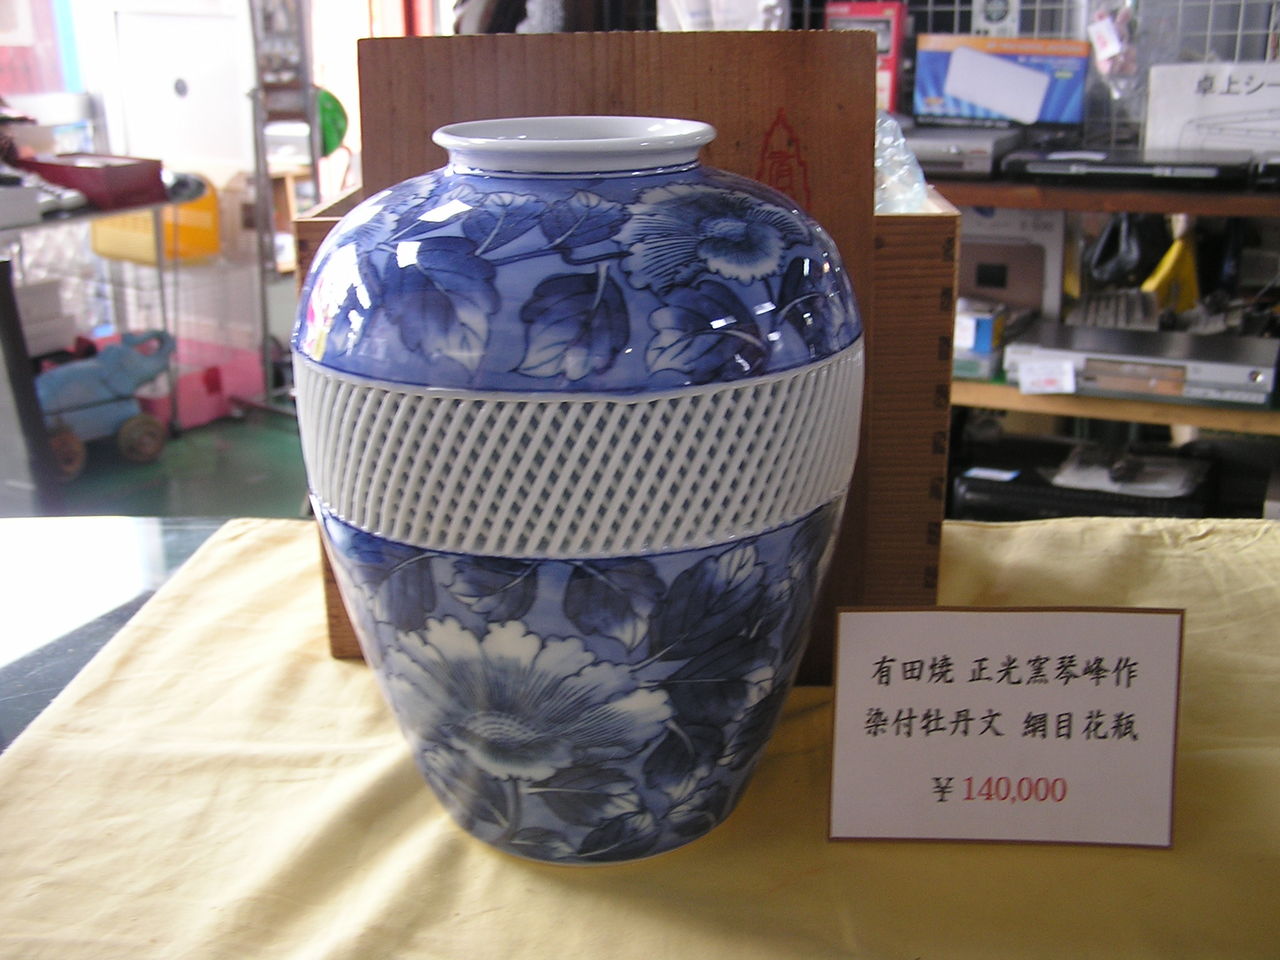 花瓶 有田焼 琴峰窯 - rehda.com